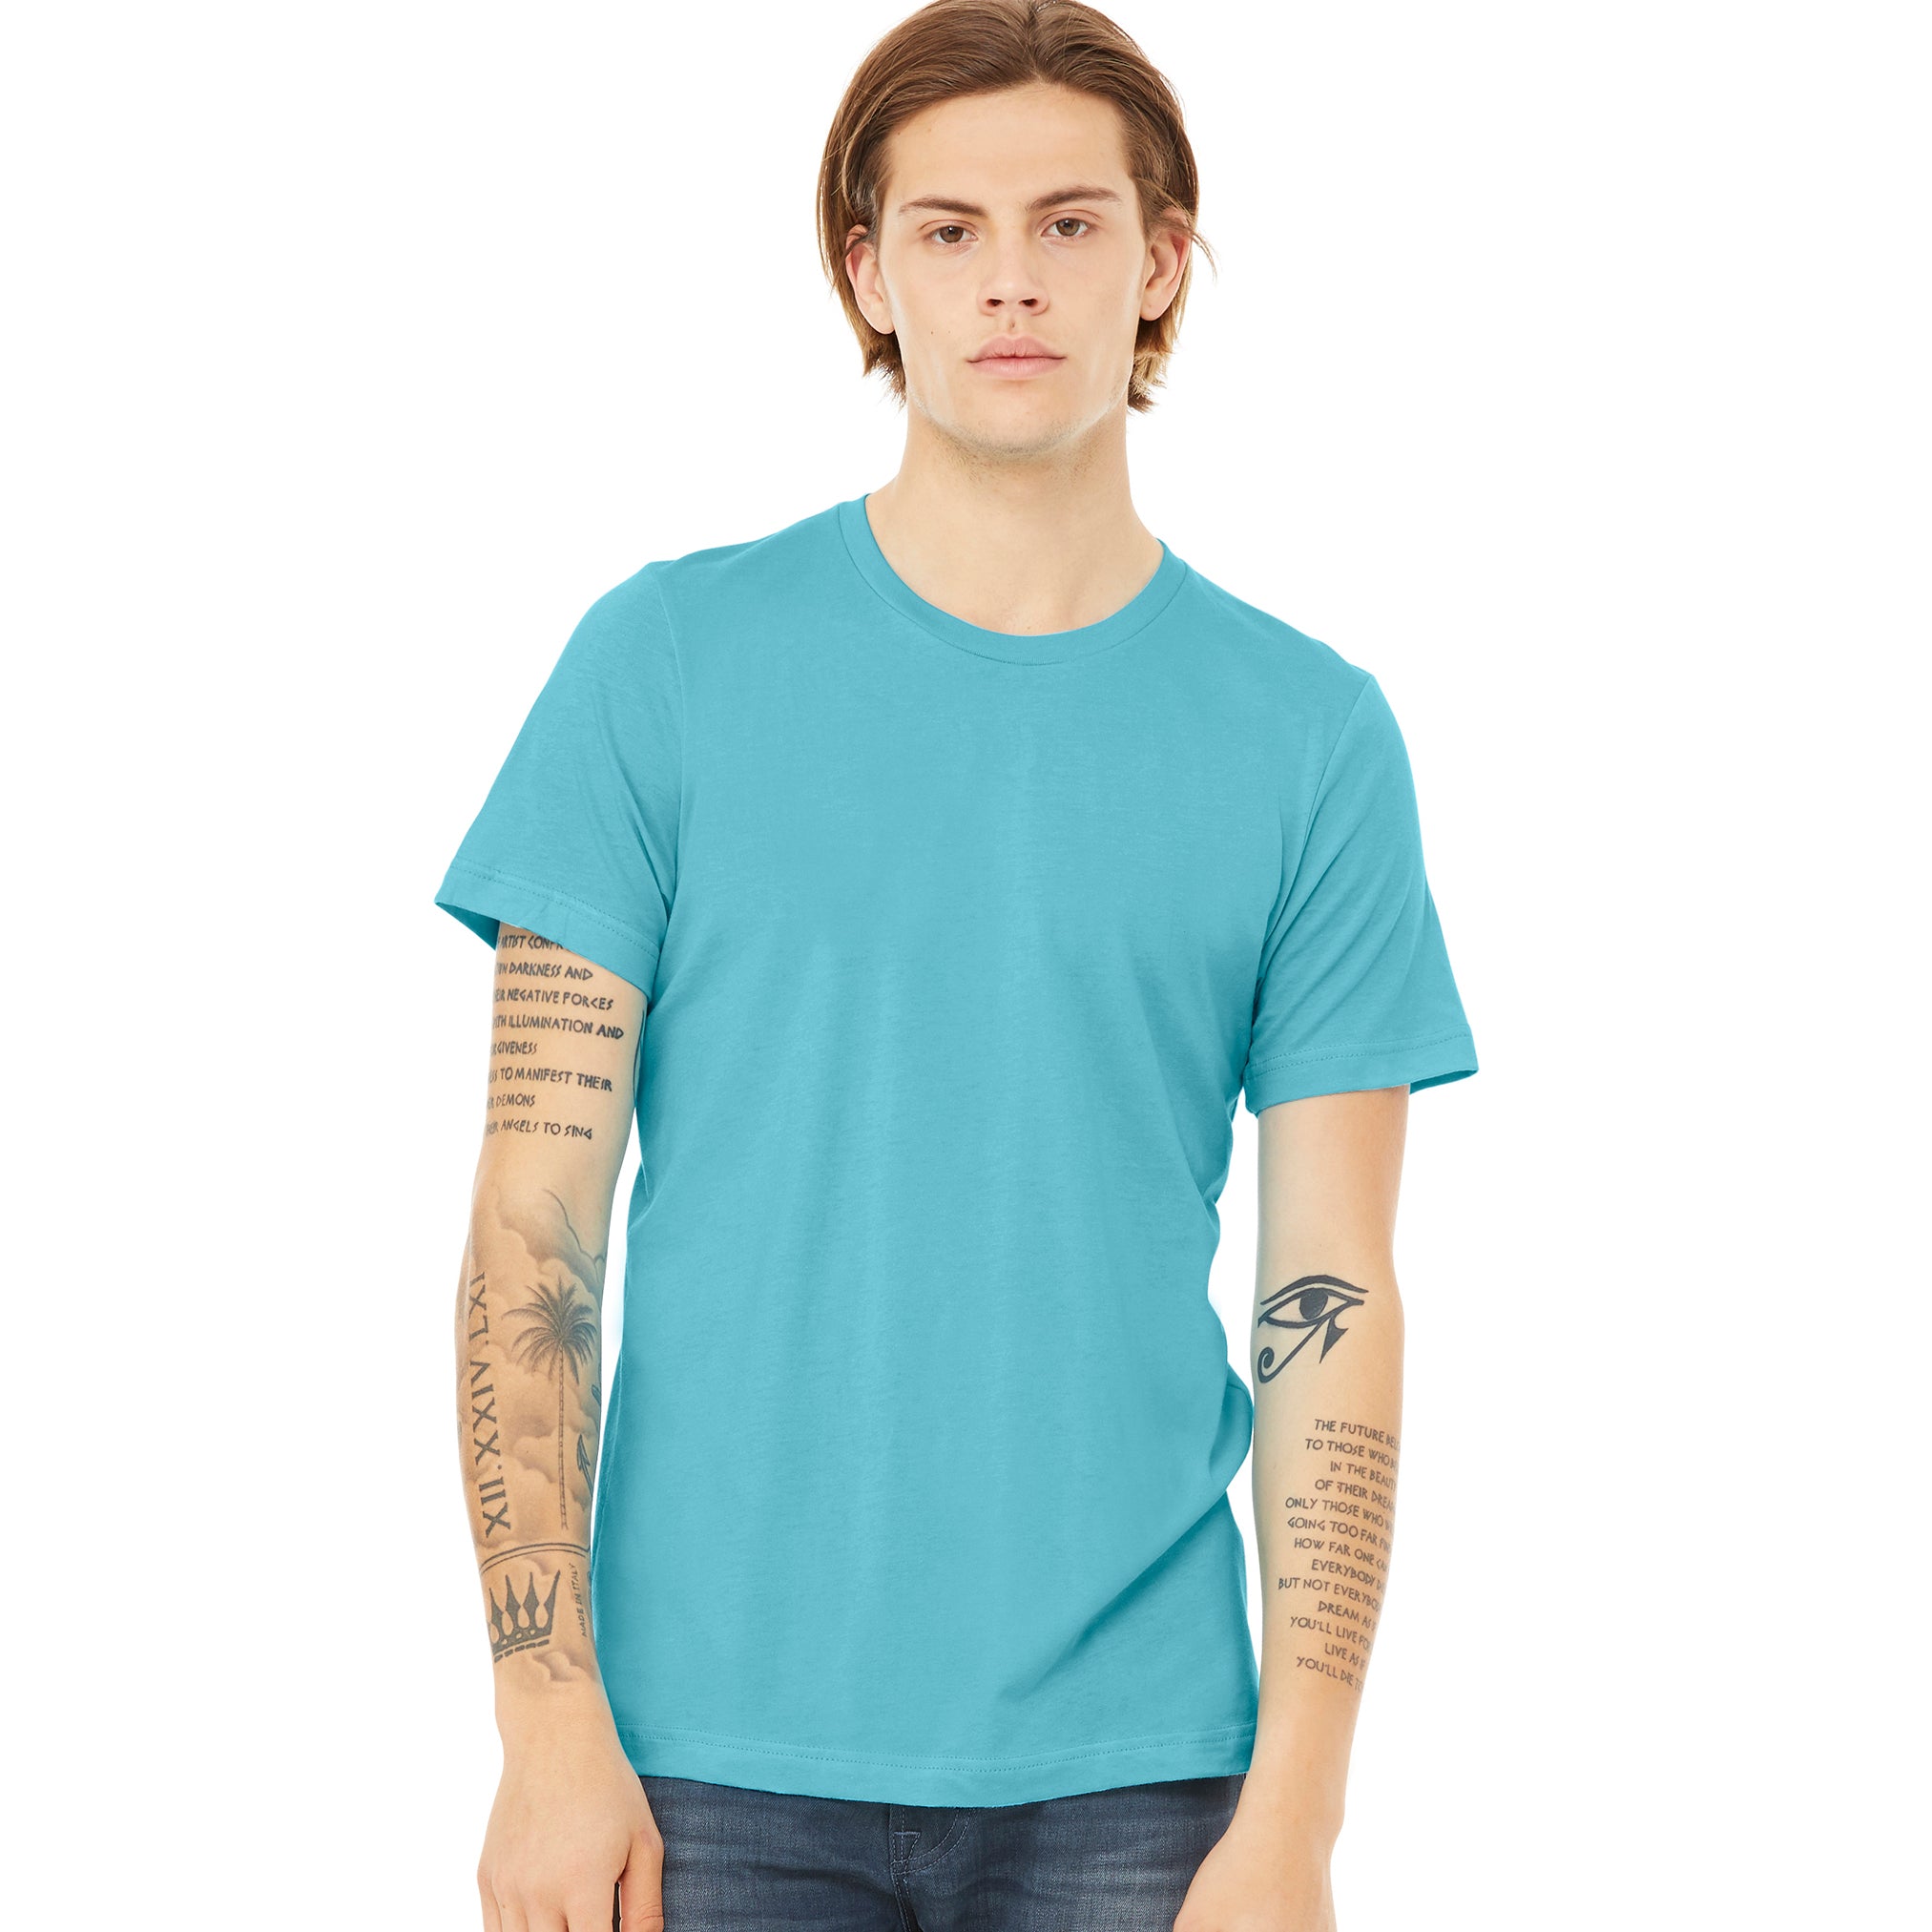 Unisex Jersey Short Sleeve Tee, Jersey T Shirt